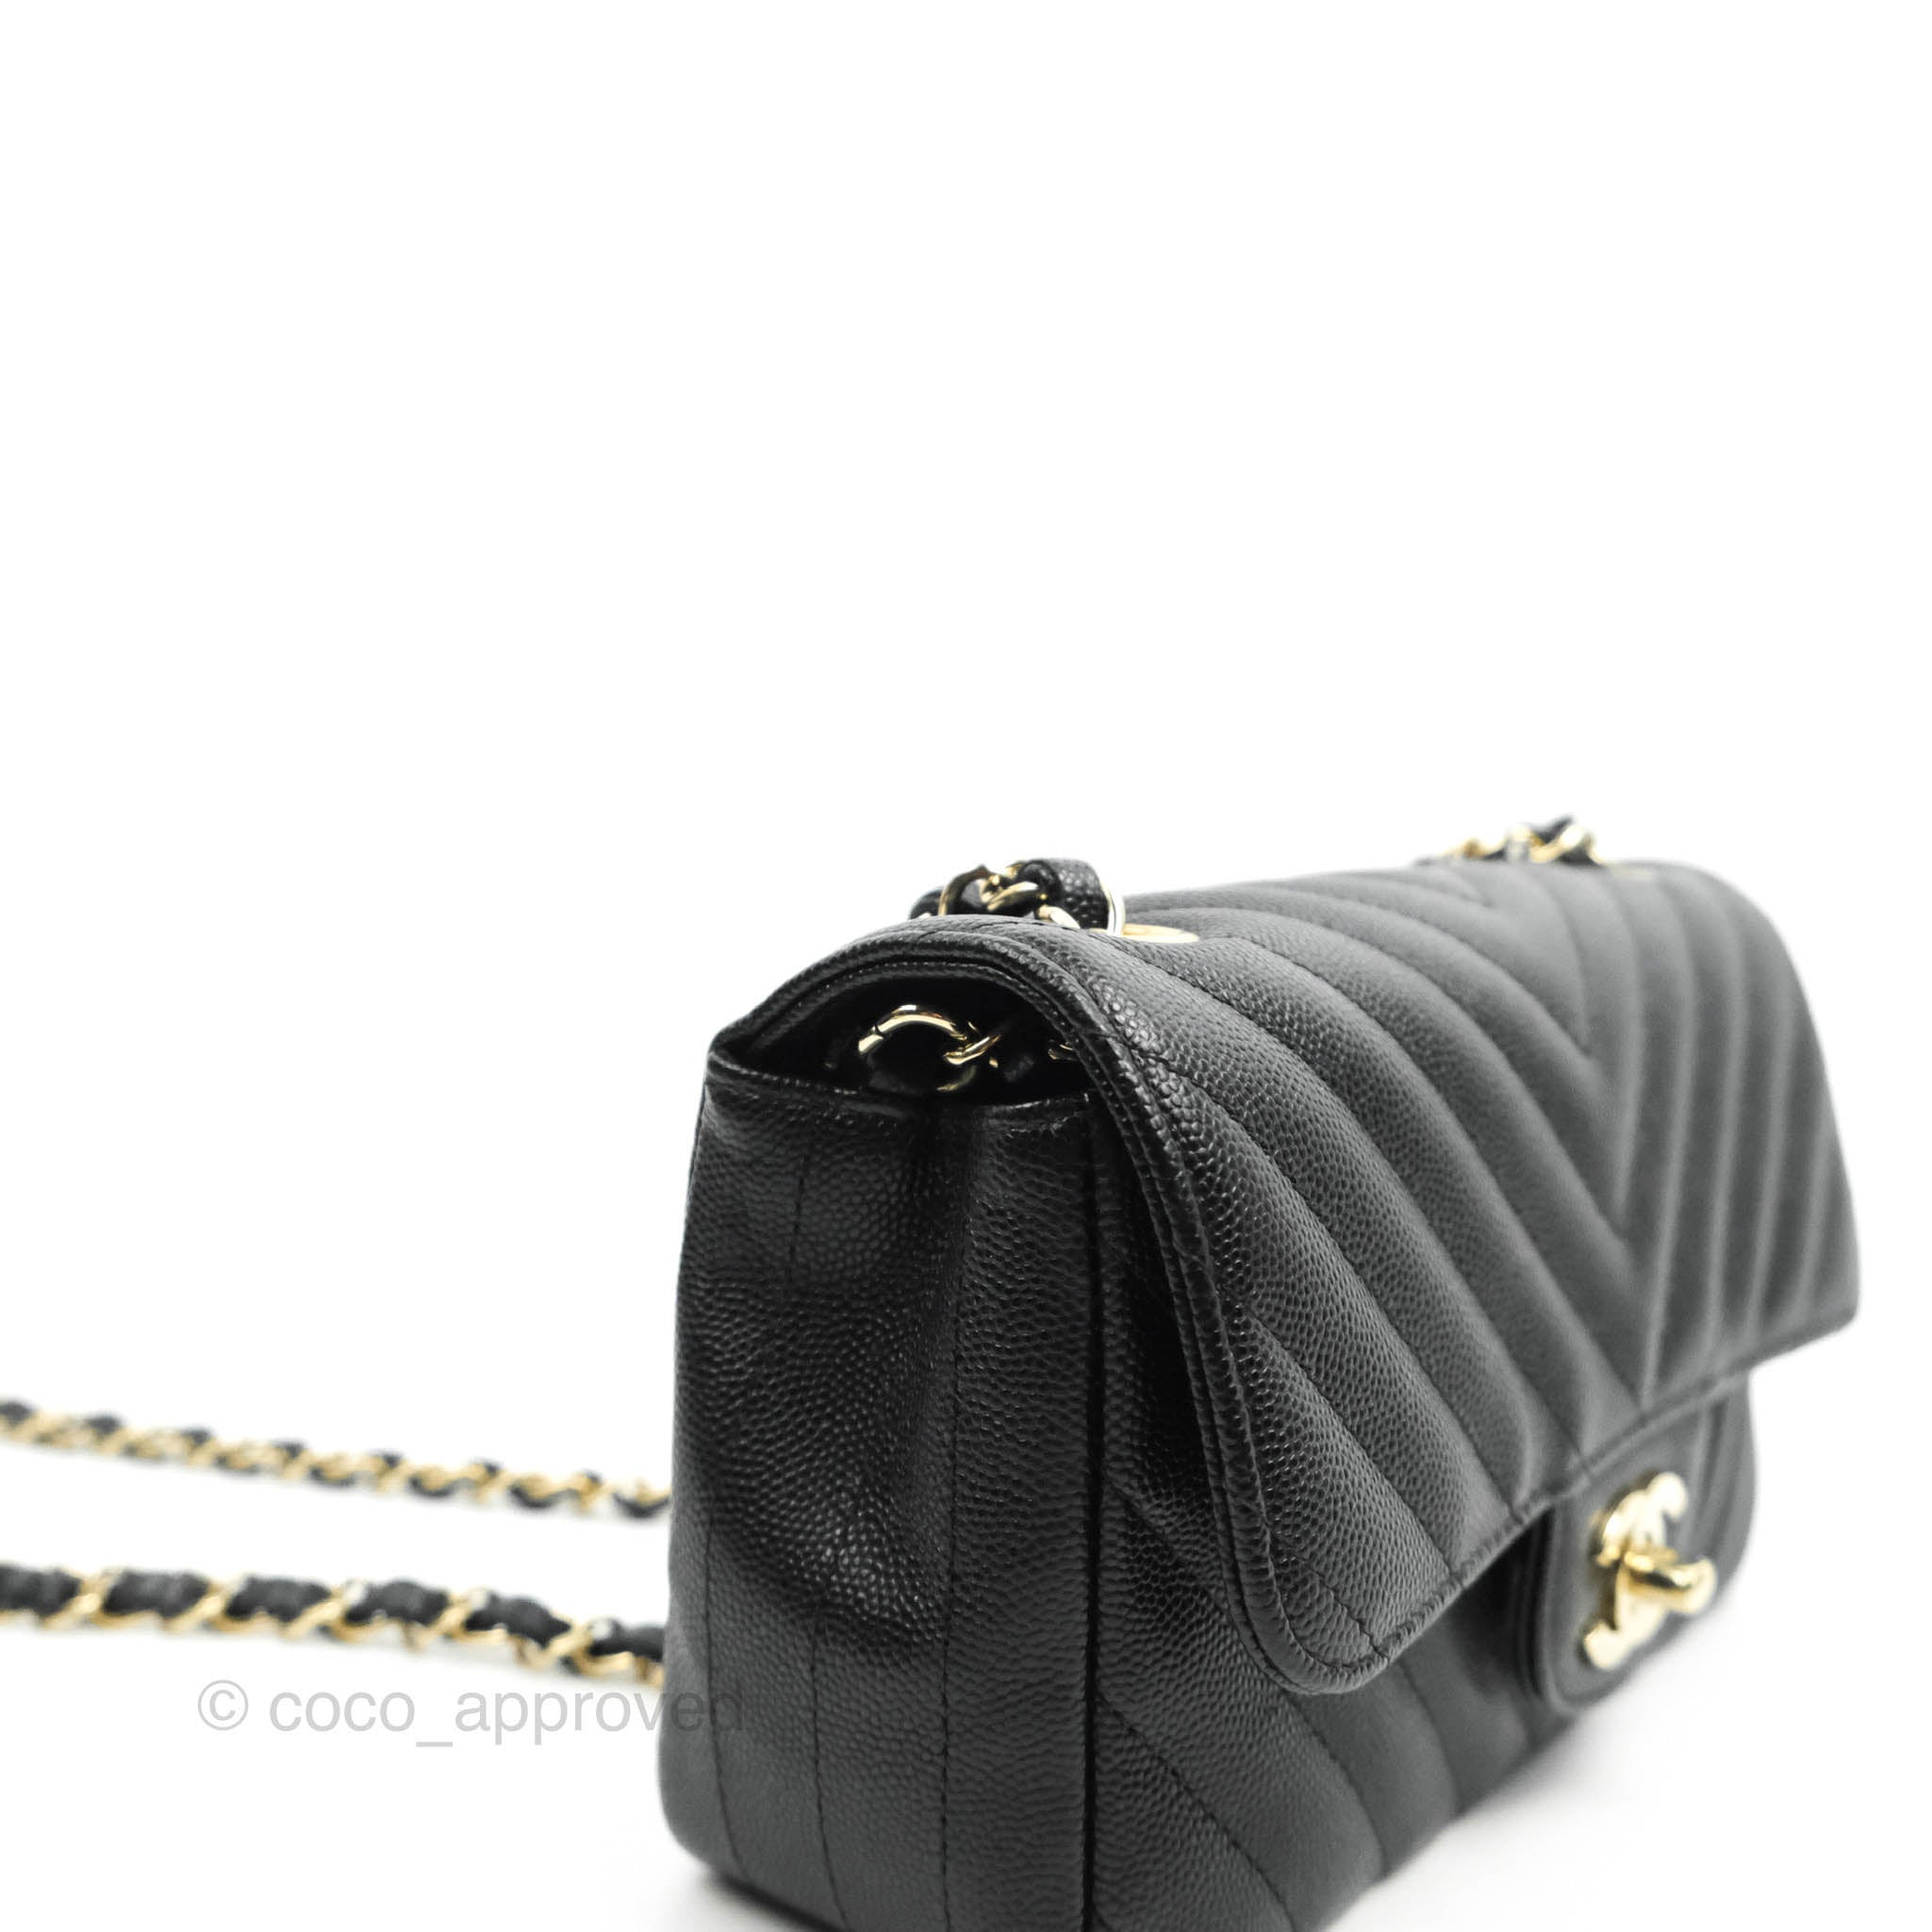 black leather chanel handbag vintage